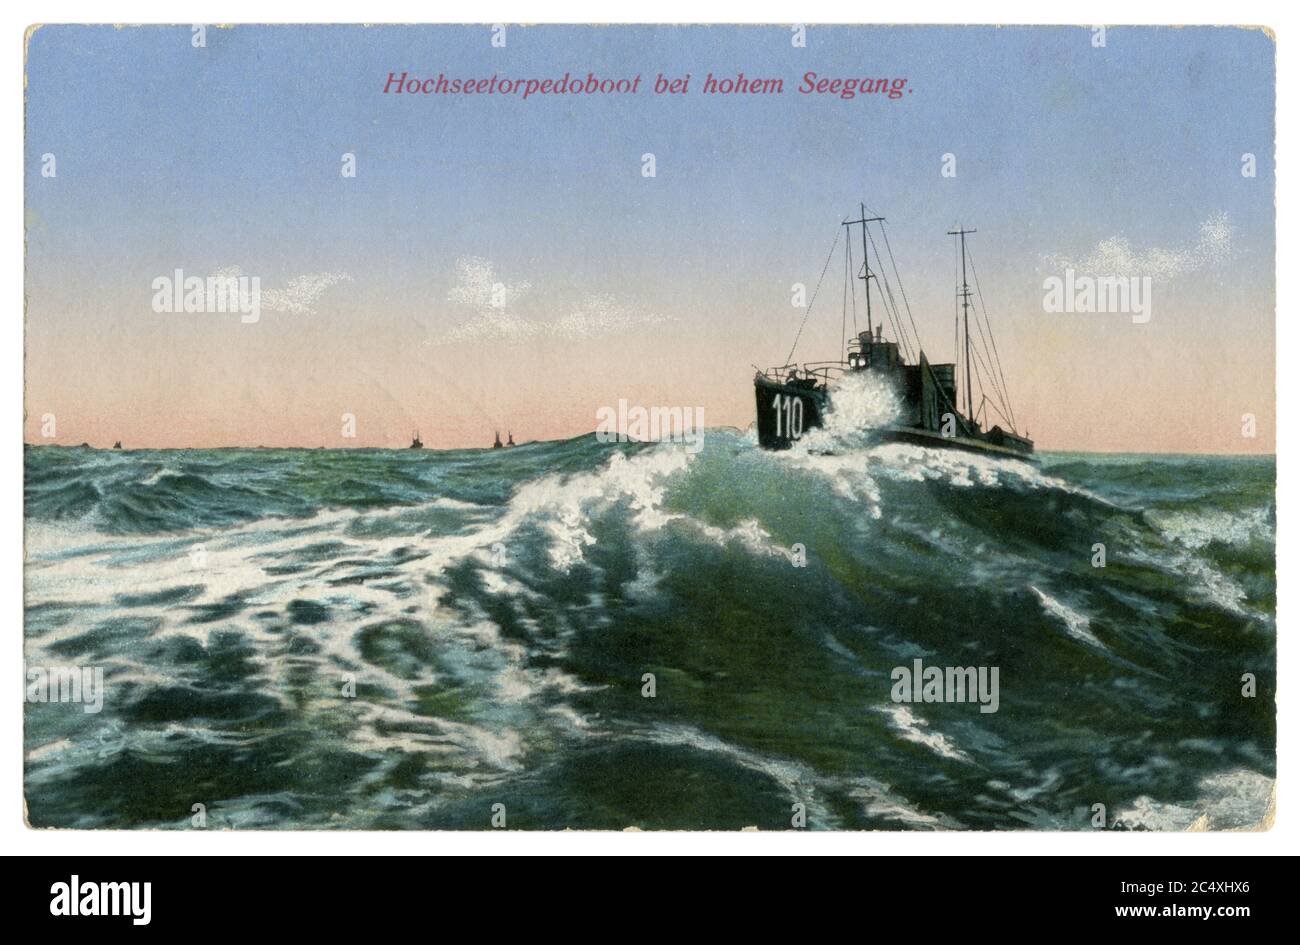 Cartolina fotografica colorata storica tedesca: Imbarcazione a siluro n° 110 su un'onda alta in mare aperto, Marina imperiale tedesca, guerra mondiale 1 1914-1918. Foto Stock